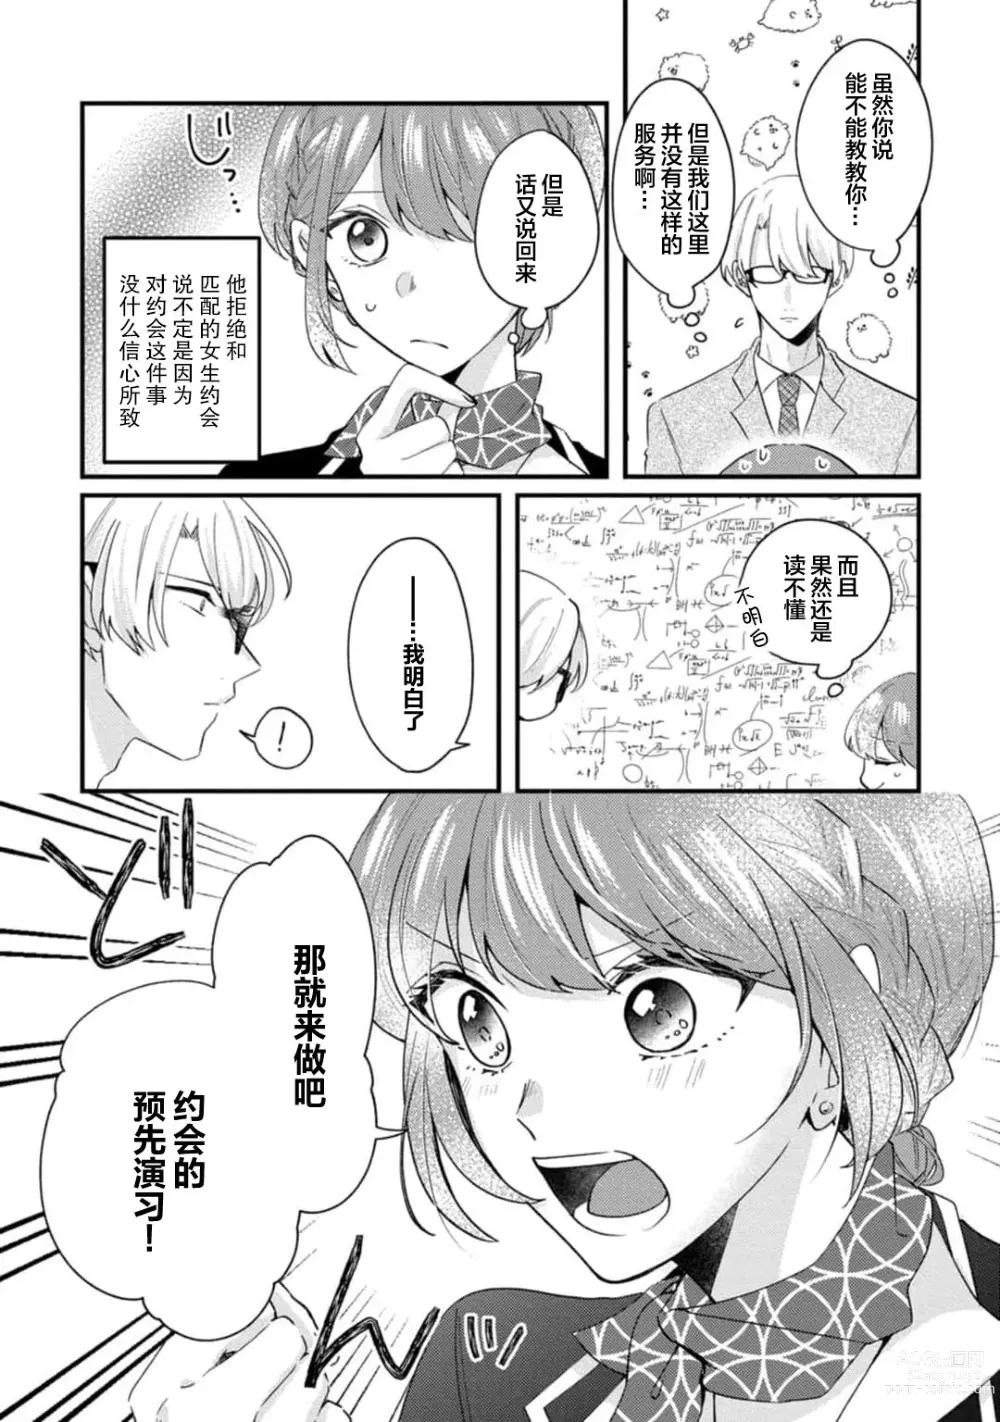 Page 10 of manga 冷酷绅士的性癖只对我泄露 1-5 end